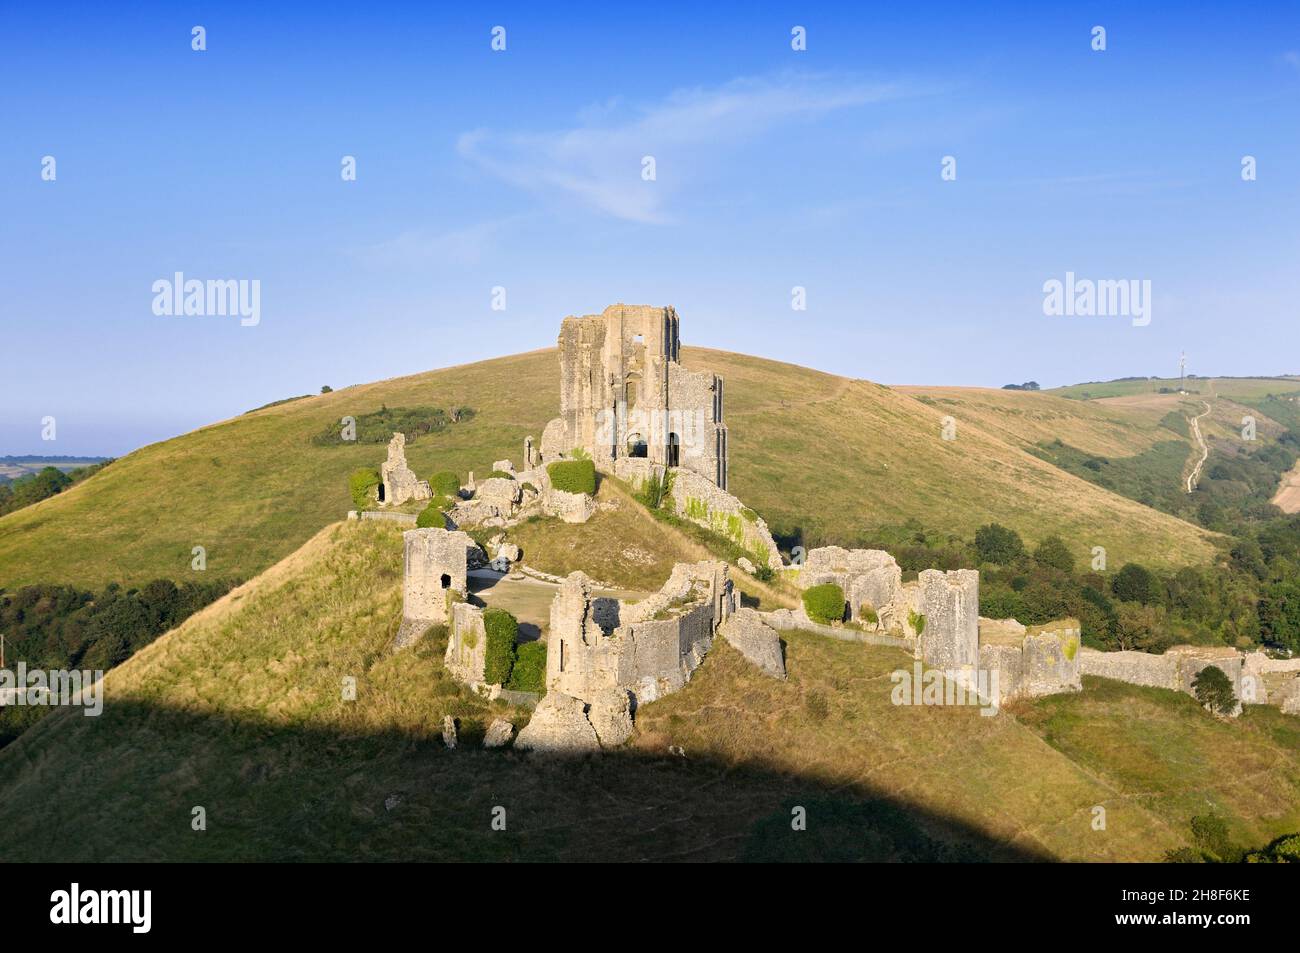 Les ruines spectaculaires du XIe siècle au sommet d'une colline du château de Corfe, île de Purbeck, Dorset, Angleterre, Royaume-Uni Banque D'Images